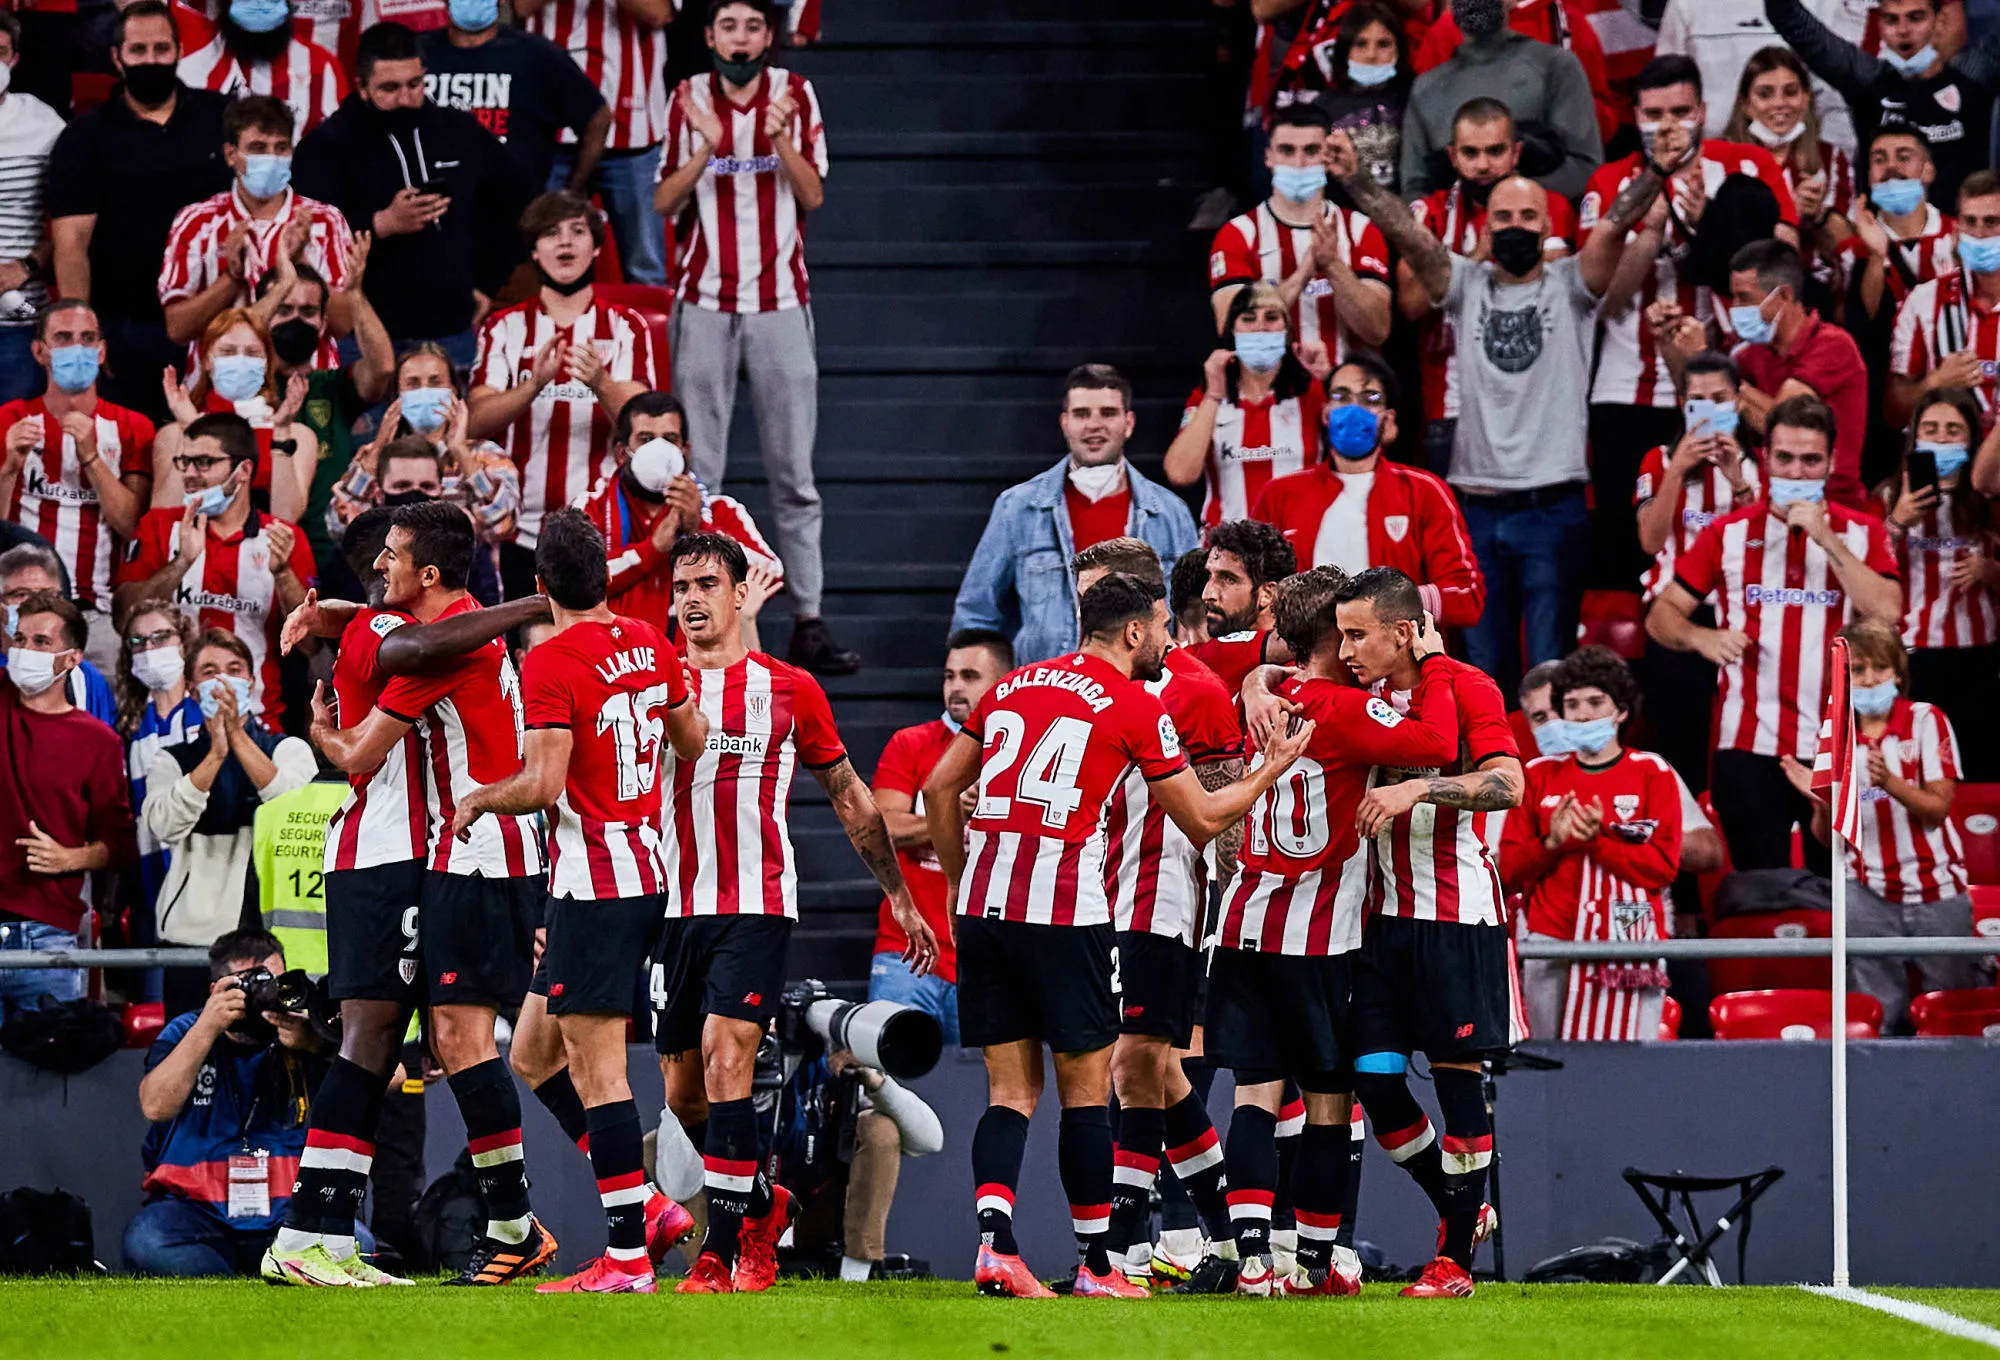 Pronostic Valence Athletic Bilbao : Analyse, cotes et prono de la demi-finale retour de Coupe du Roi